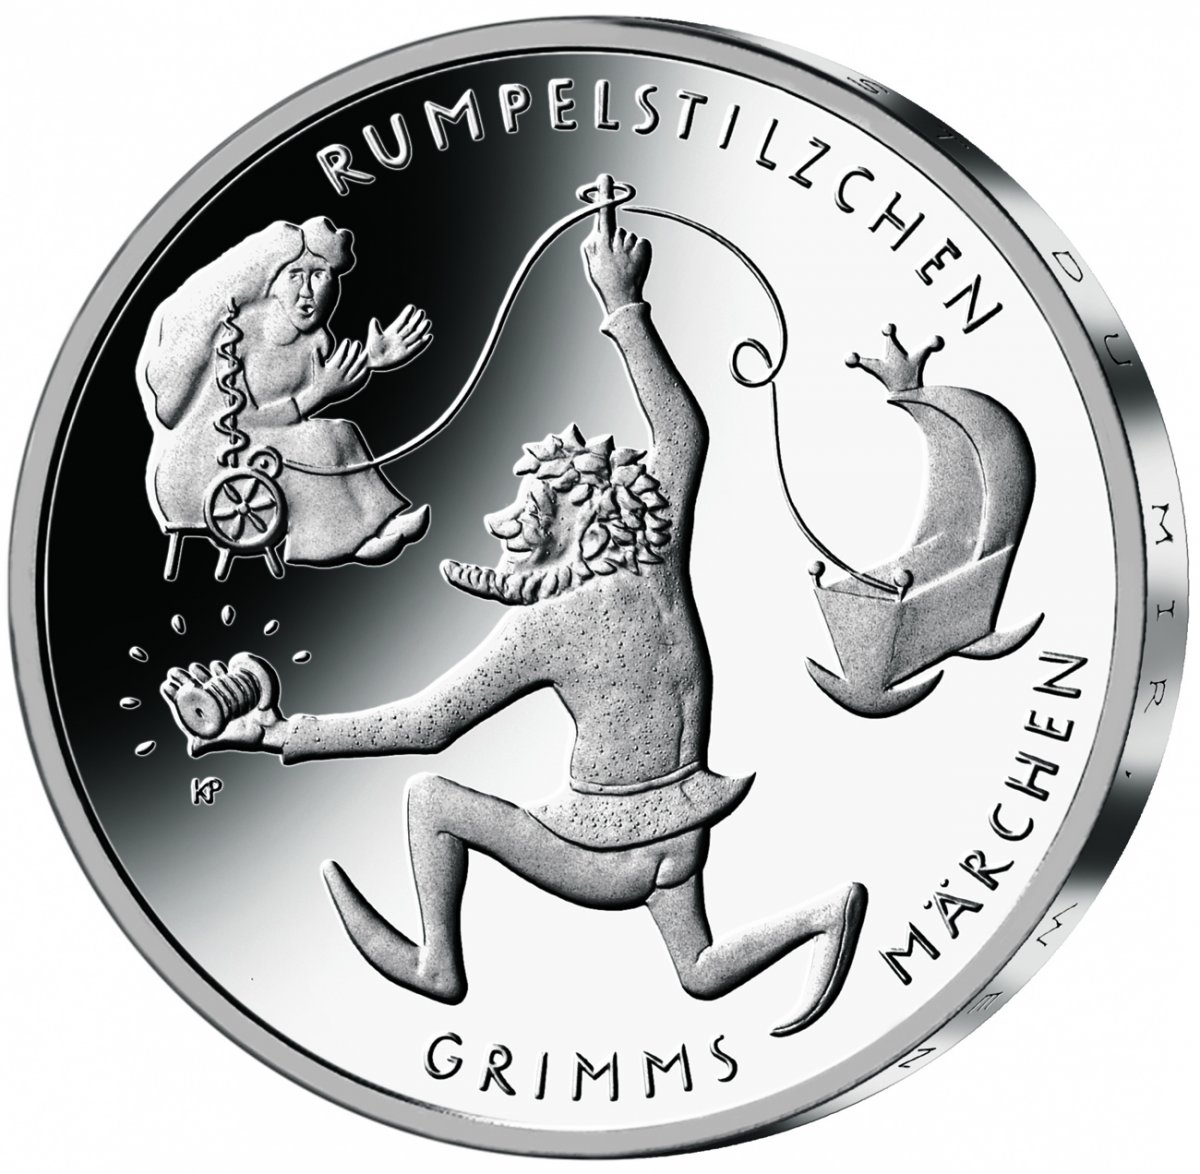 20-Euro-Silbermünze 2022 "Rumpelstilzchen"                                                           